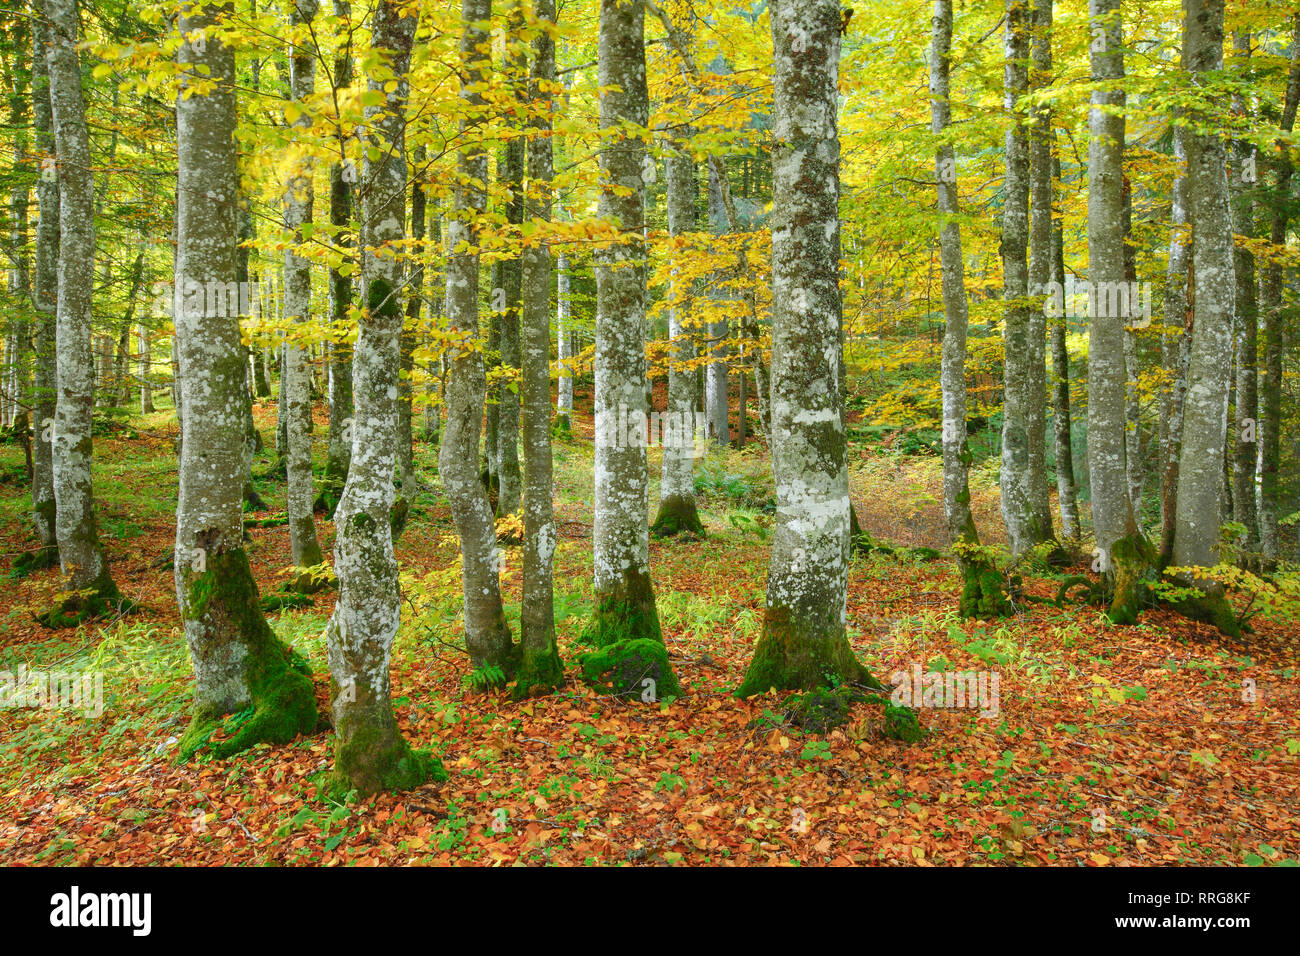 La botanica, foresta di faggio in autunno, Svizzera, No-Folded-Card-Use, paesi di lingua tedesca (D / A / CH), 01.05.2017 - 01.05.2020, Foto Stock